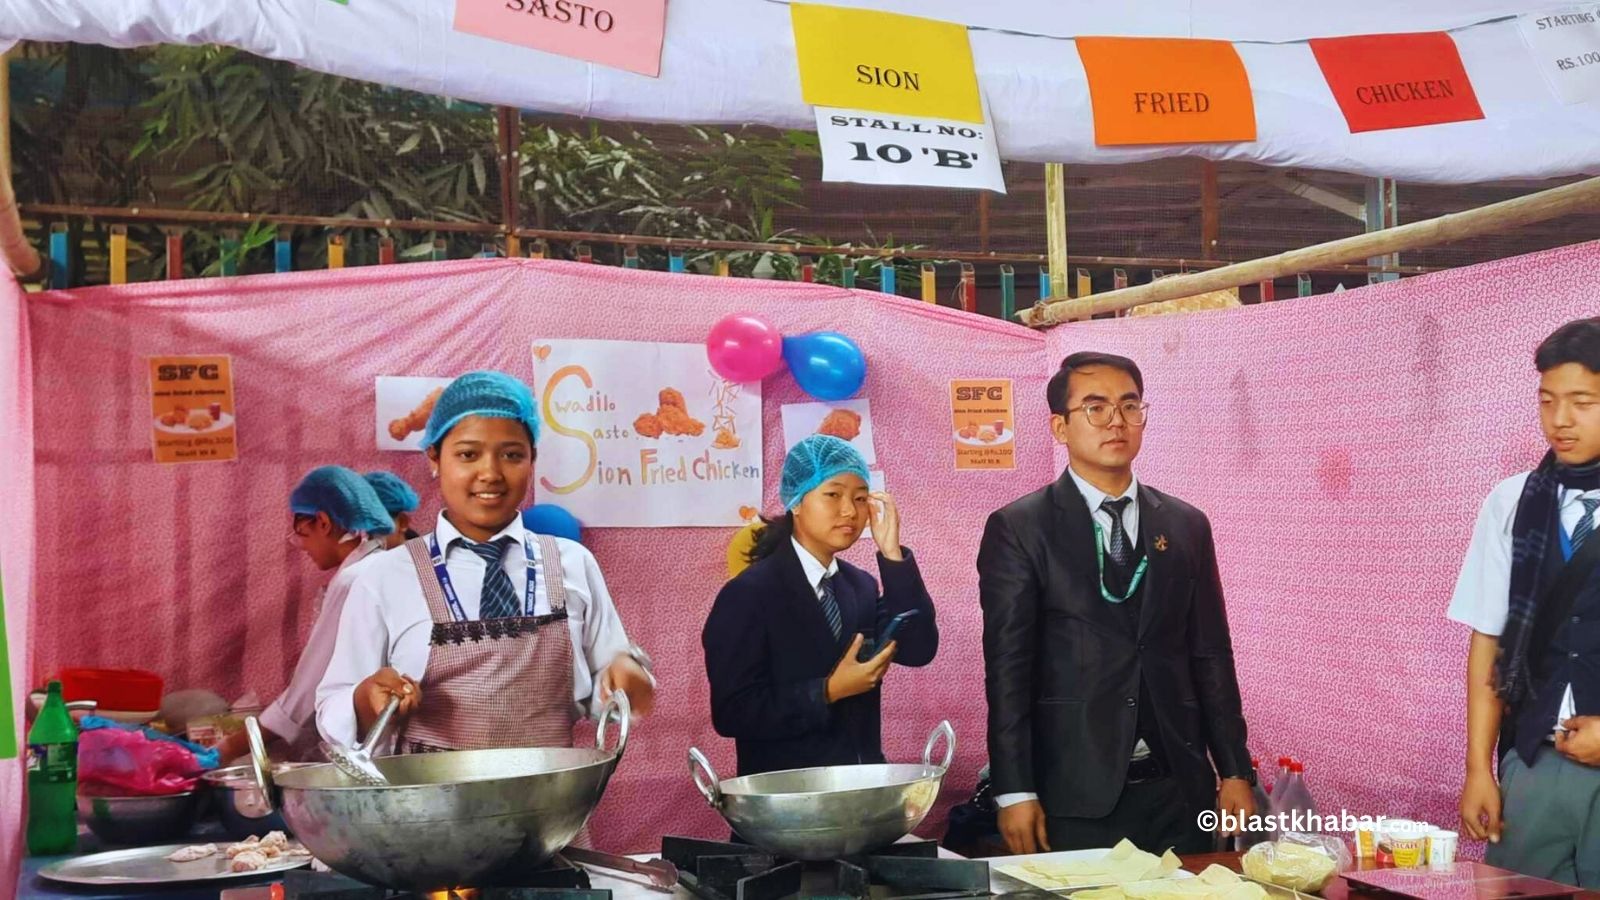 Sion School's Food Festival ©blastkhabar (6)